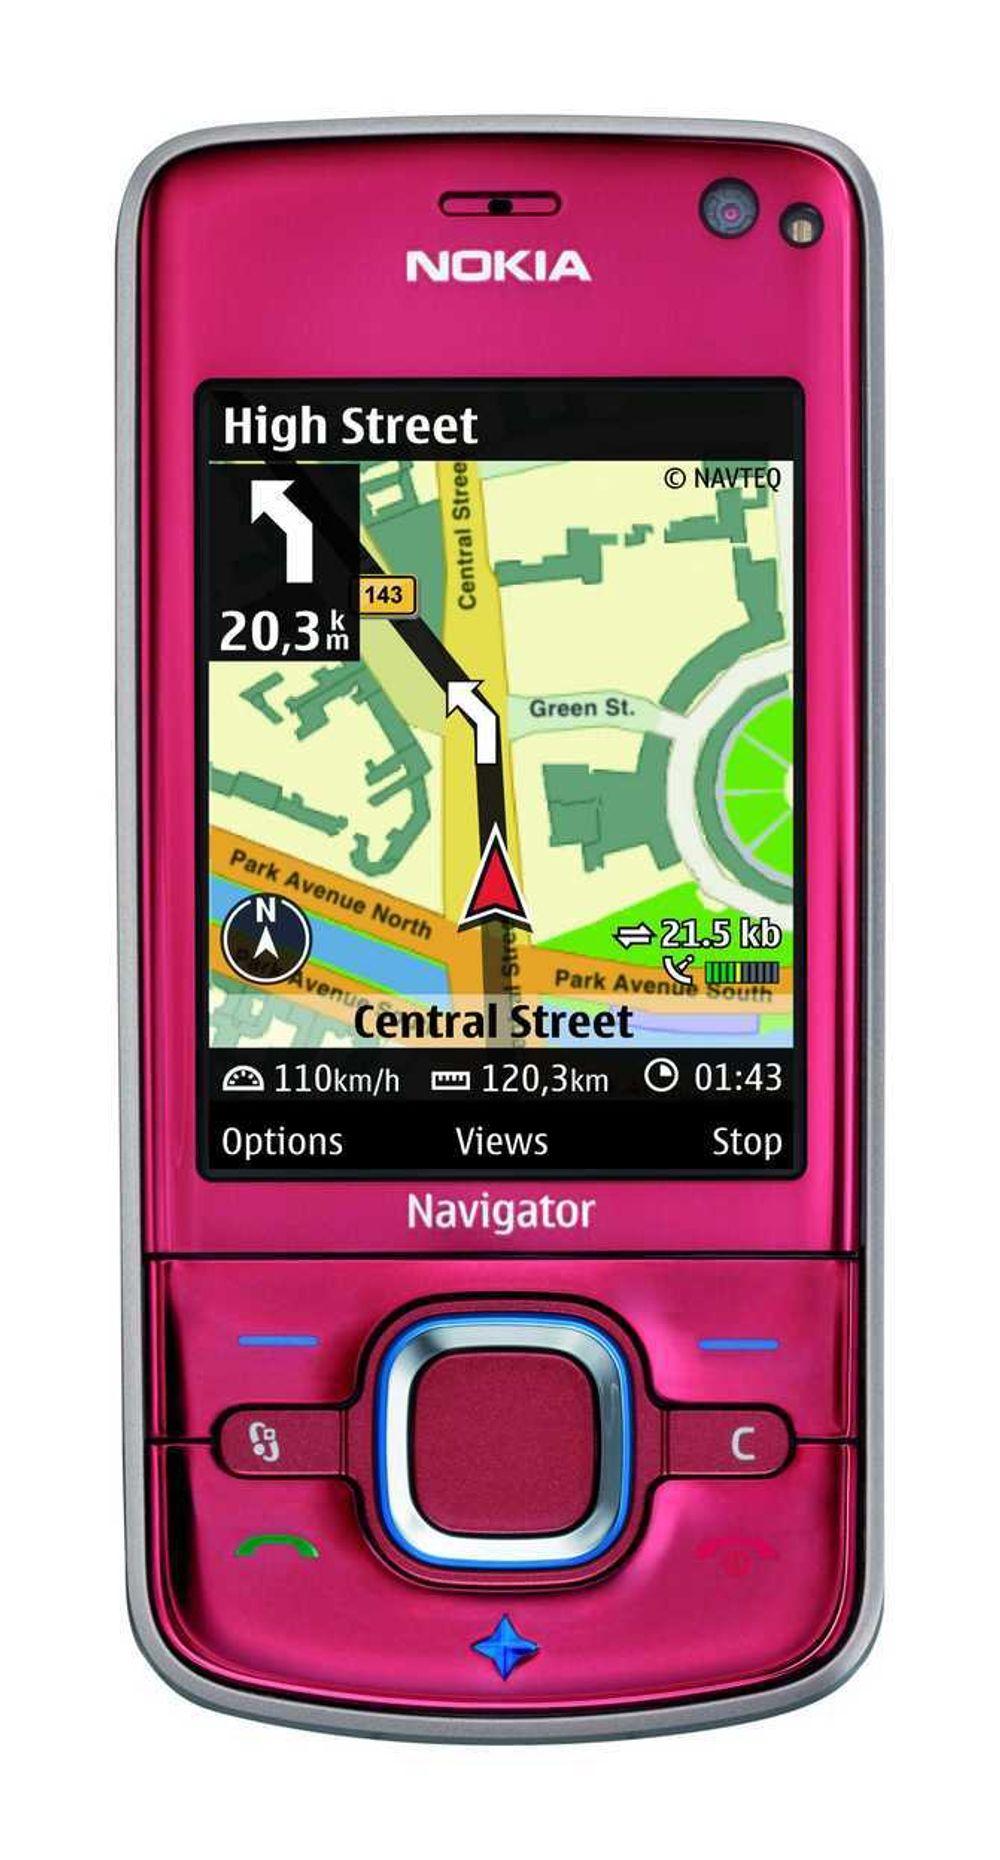 DEN NYE VEIVISEREN: Nokia 6210 Navigator leveres med Nokia Maps 2.0, også lansert i dag, og har full stemme- og visuelt basert veiviser uten ekstra kostnader. Nokia 6210 Navigator er ventet i 3. kvartal 2008 med en estimert pris på  2 412, eksklusiv skatter og subsidier.